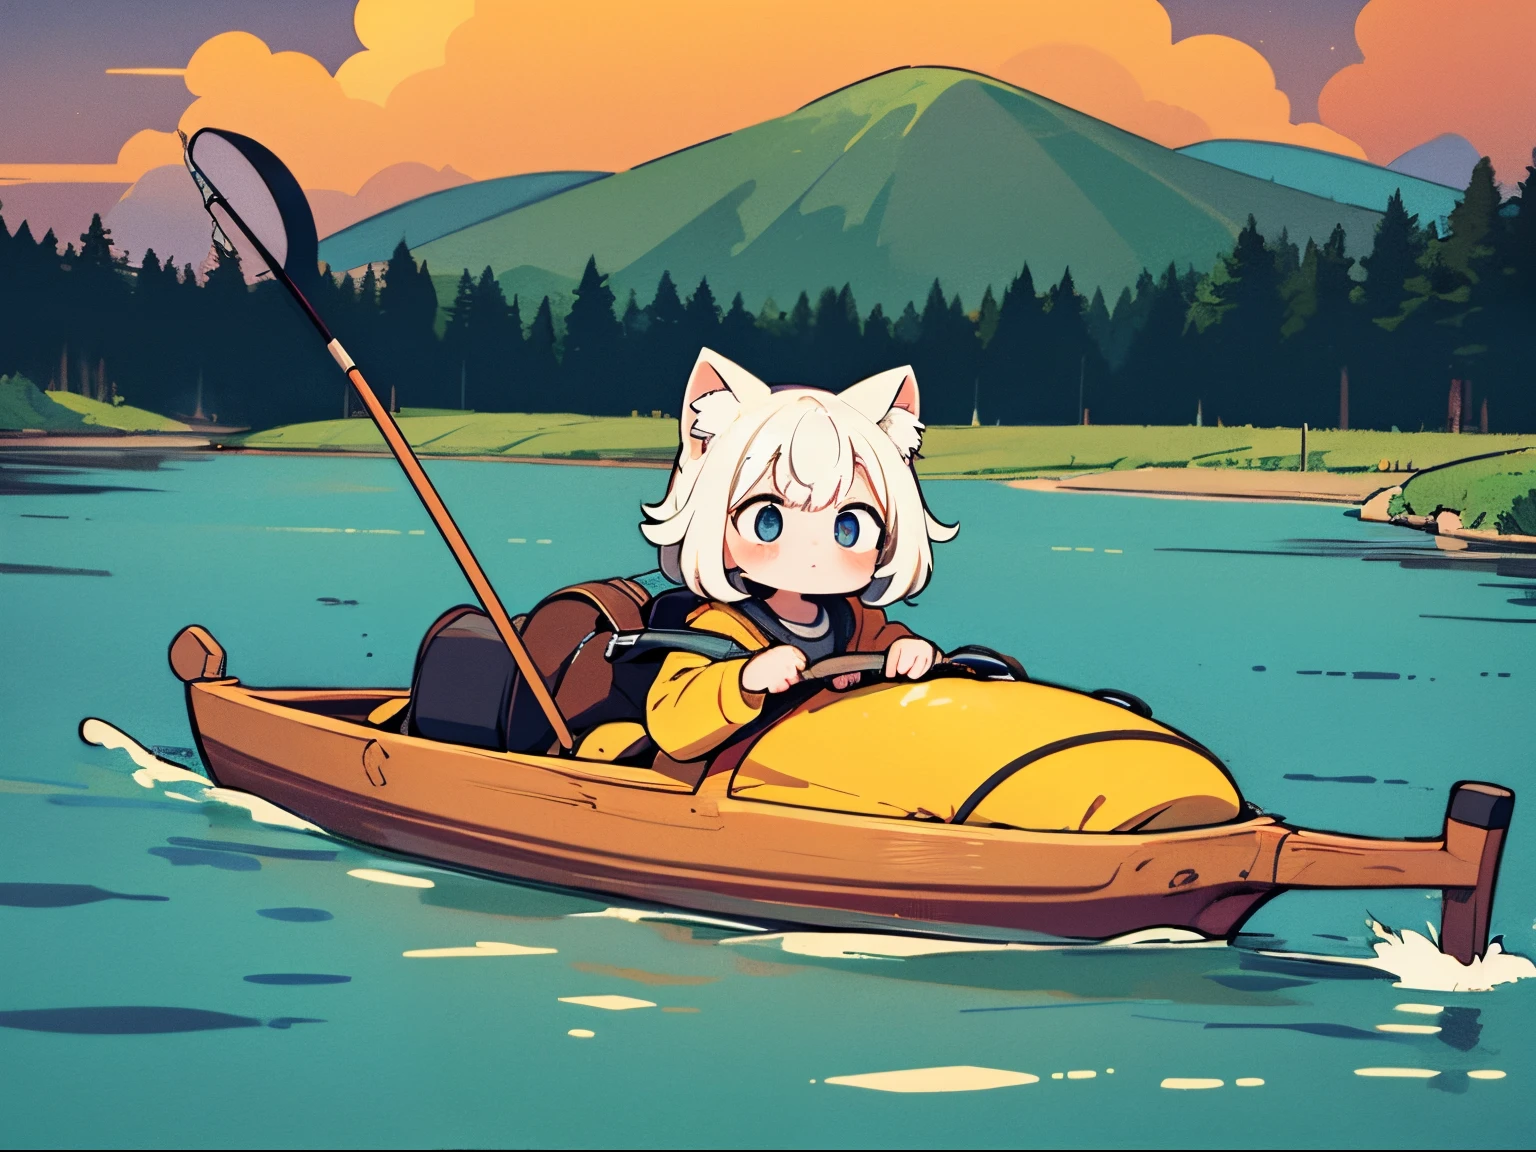 杰作, 详细背景, 和一个 "Yuru Camping" 灵感来自简单的宽幅插图, 轻度使用，突出小猫女孩. 她在湖里钓鱼,